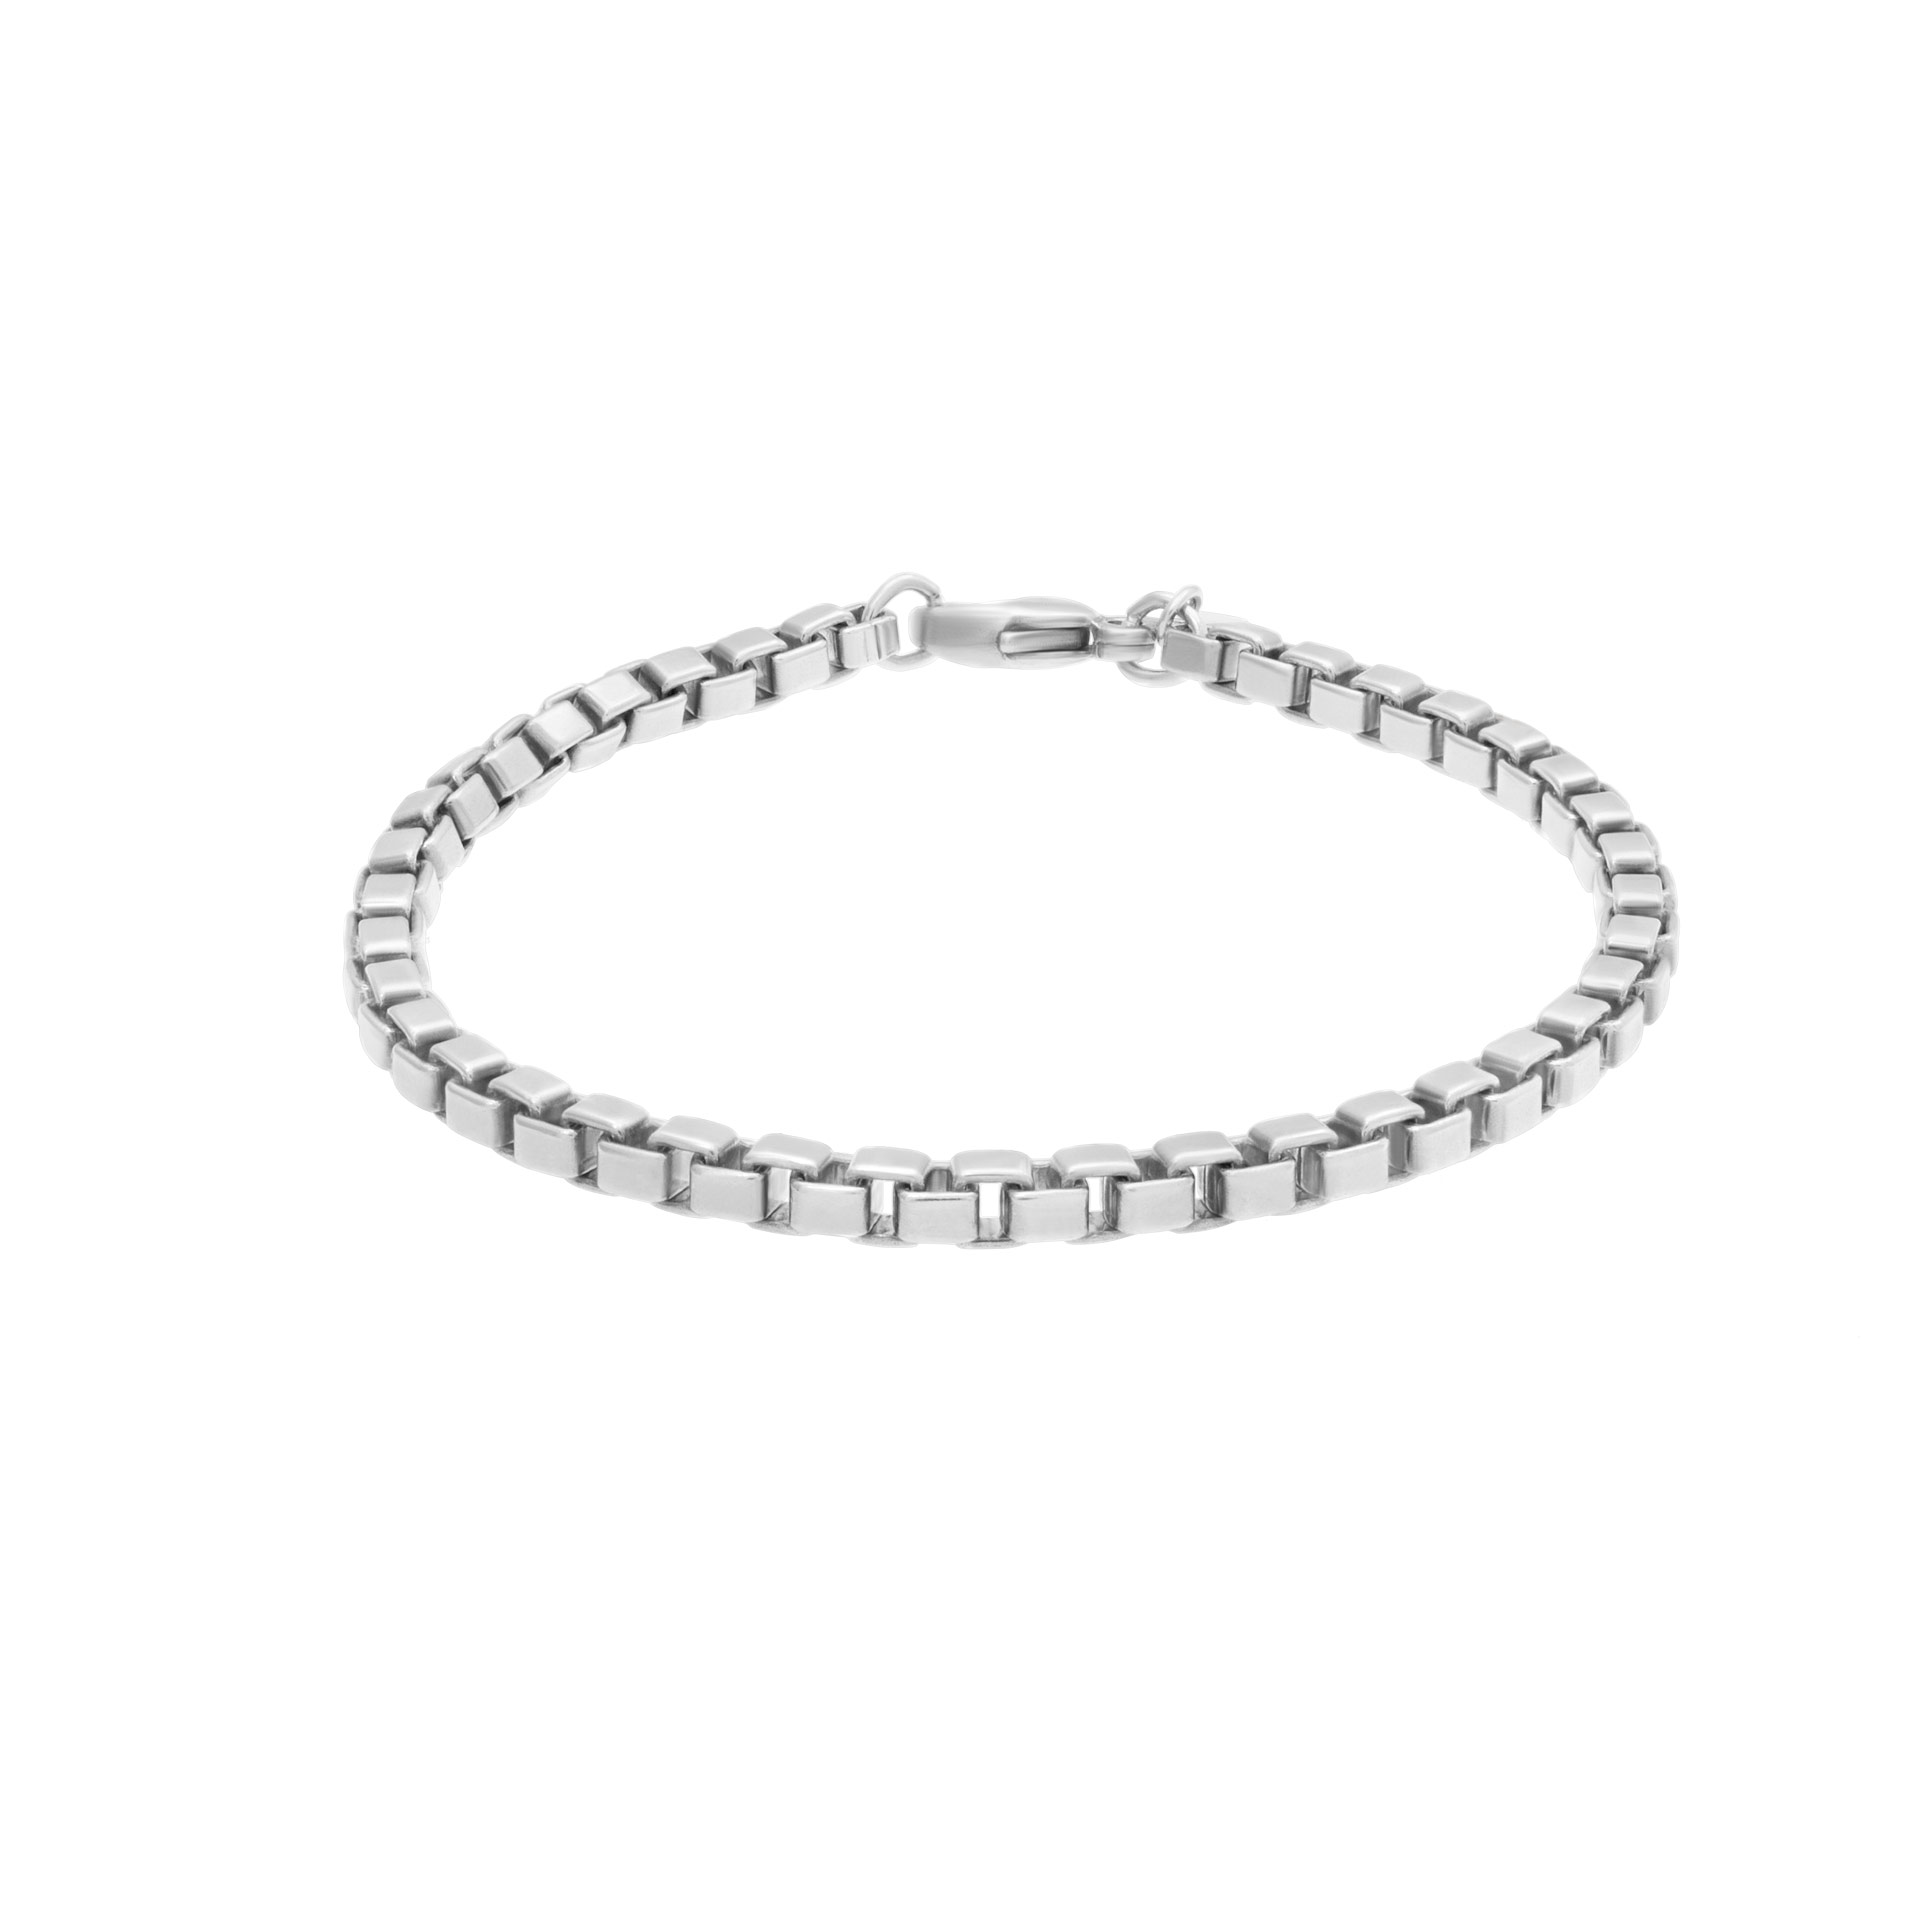 Tiffany & Co. venetian box link bracelet in sterling silver